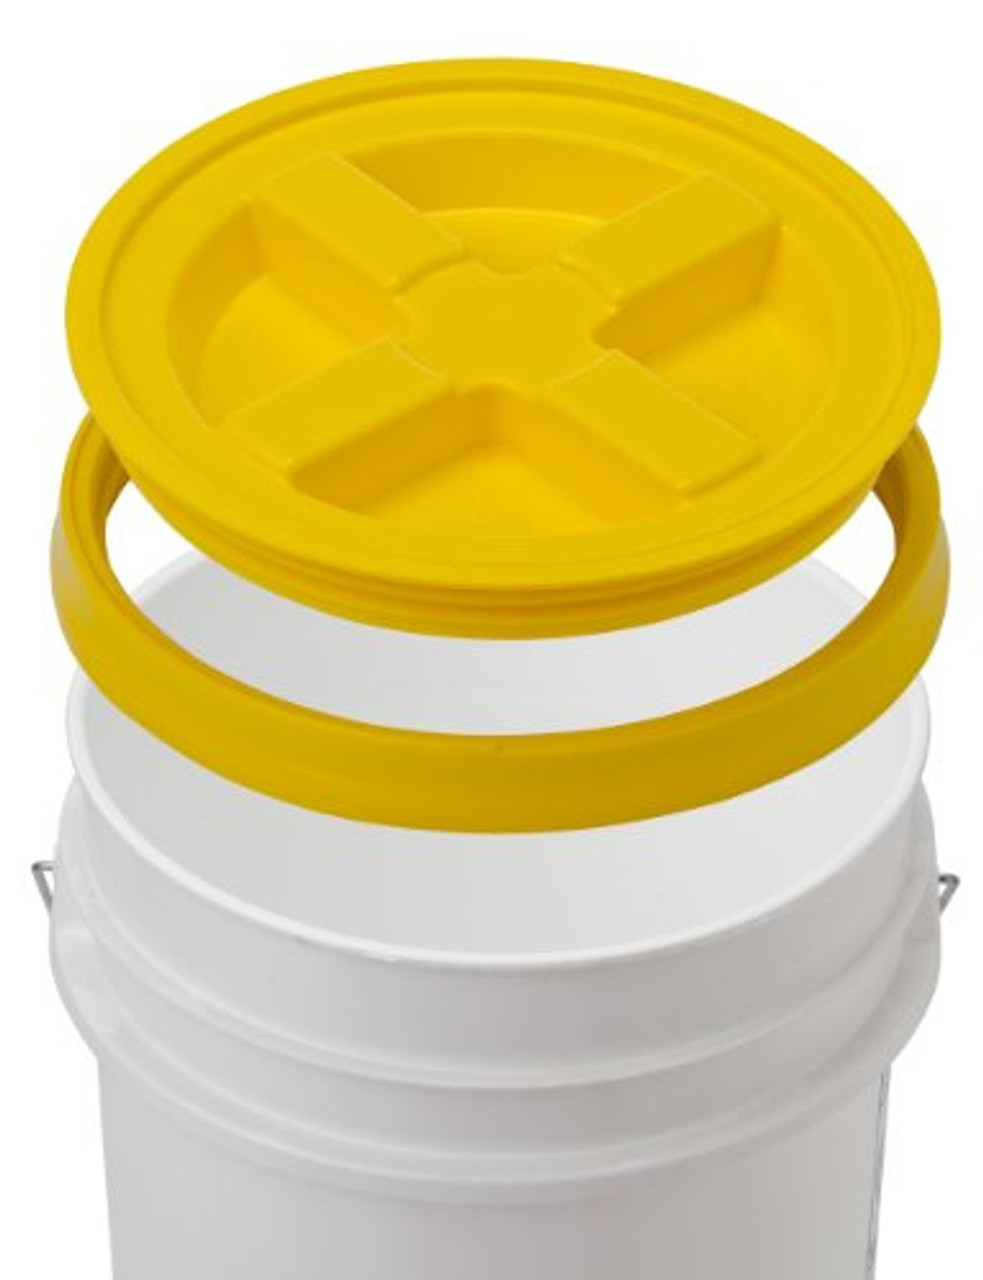 Bucket Kit, 3.5 Gallon Bucket with White Gamma Seal Screw-on threaded lid